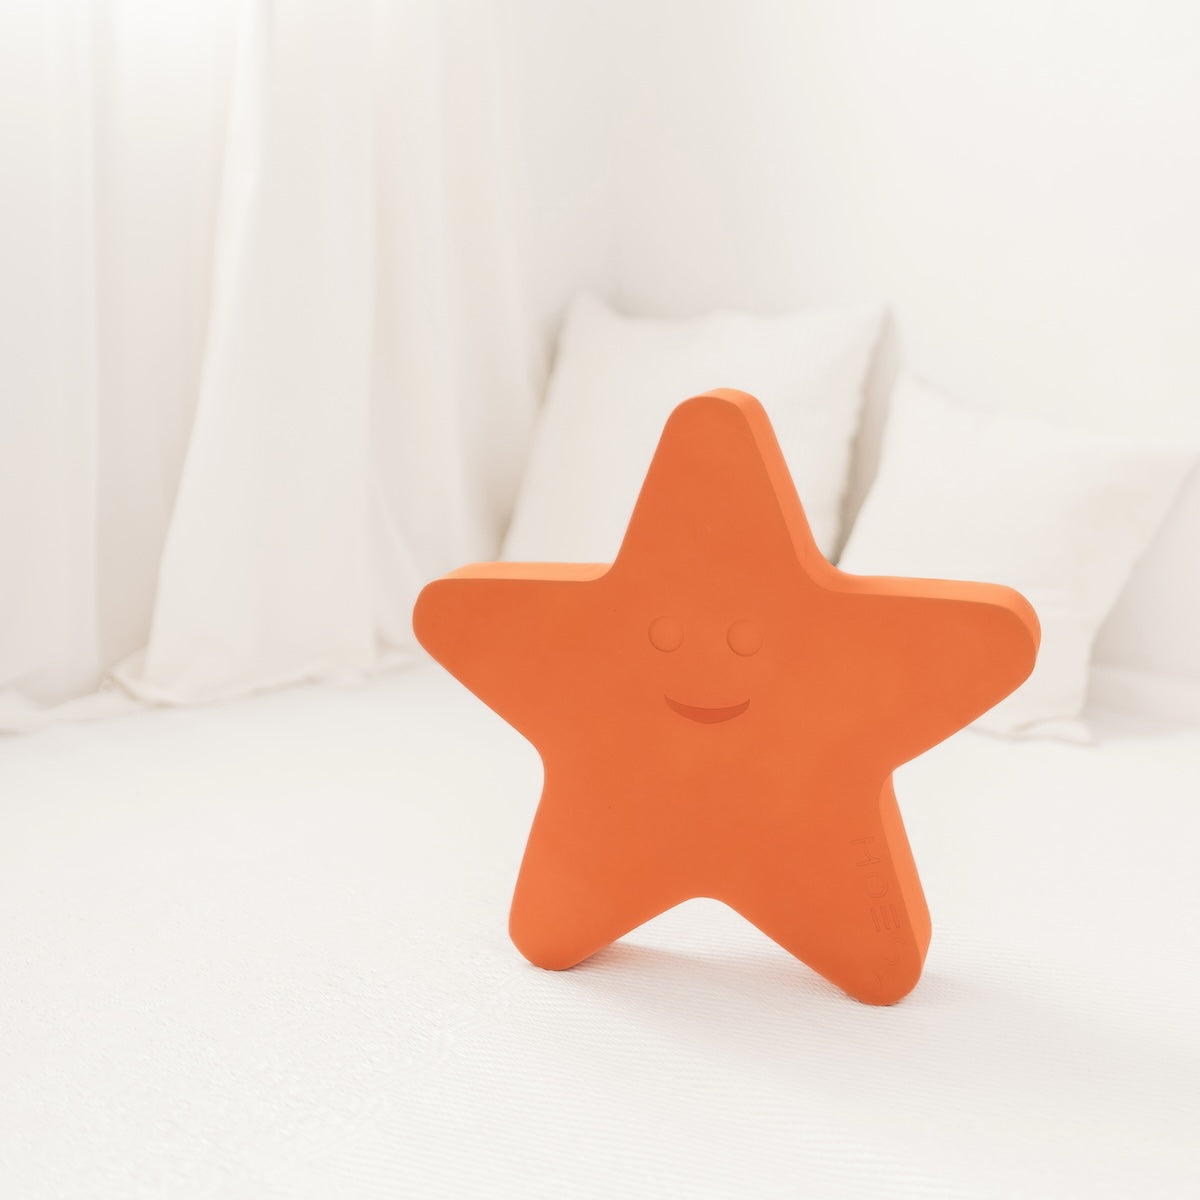 Wil jouw kindje de ster van de zee worden? Dat kan met deze schattige en zeer functionele starfish van Moes Play! Met deze lieve zeester leert je kindje in een mum van tijd balanceren, stuiteren, draaien en surfen. Zijn ze klaar voor dit avontuur? VanZus